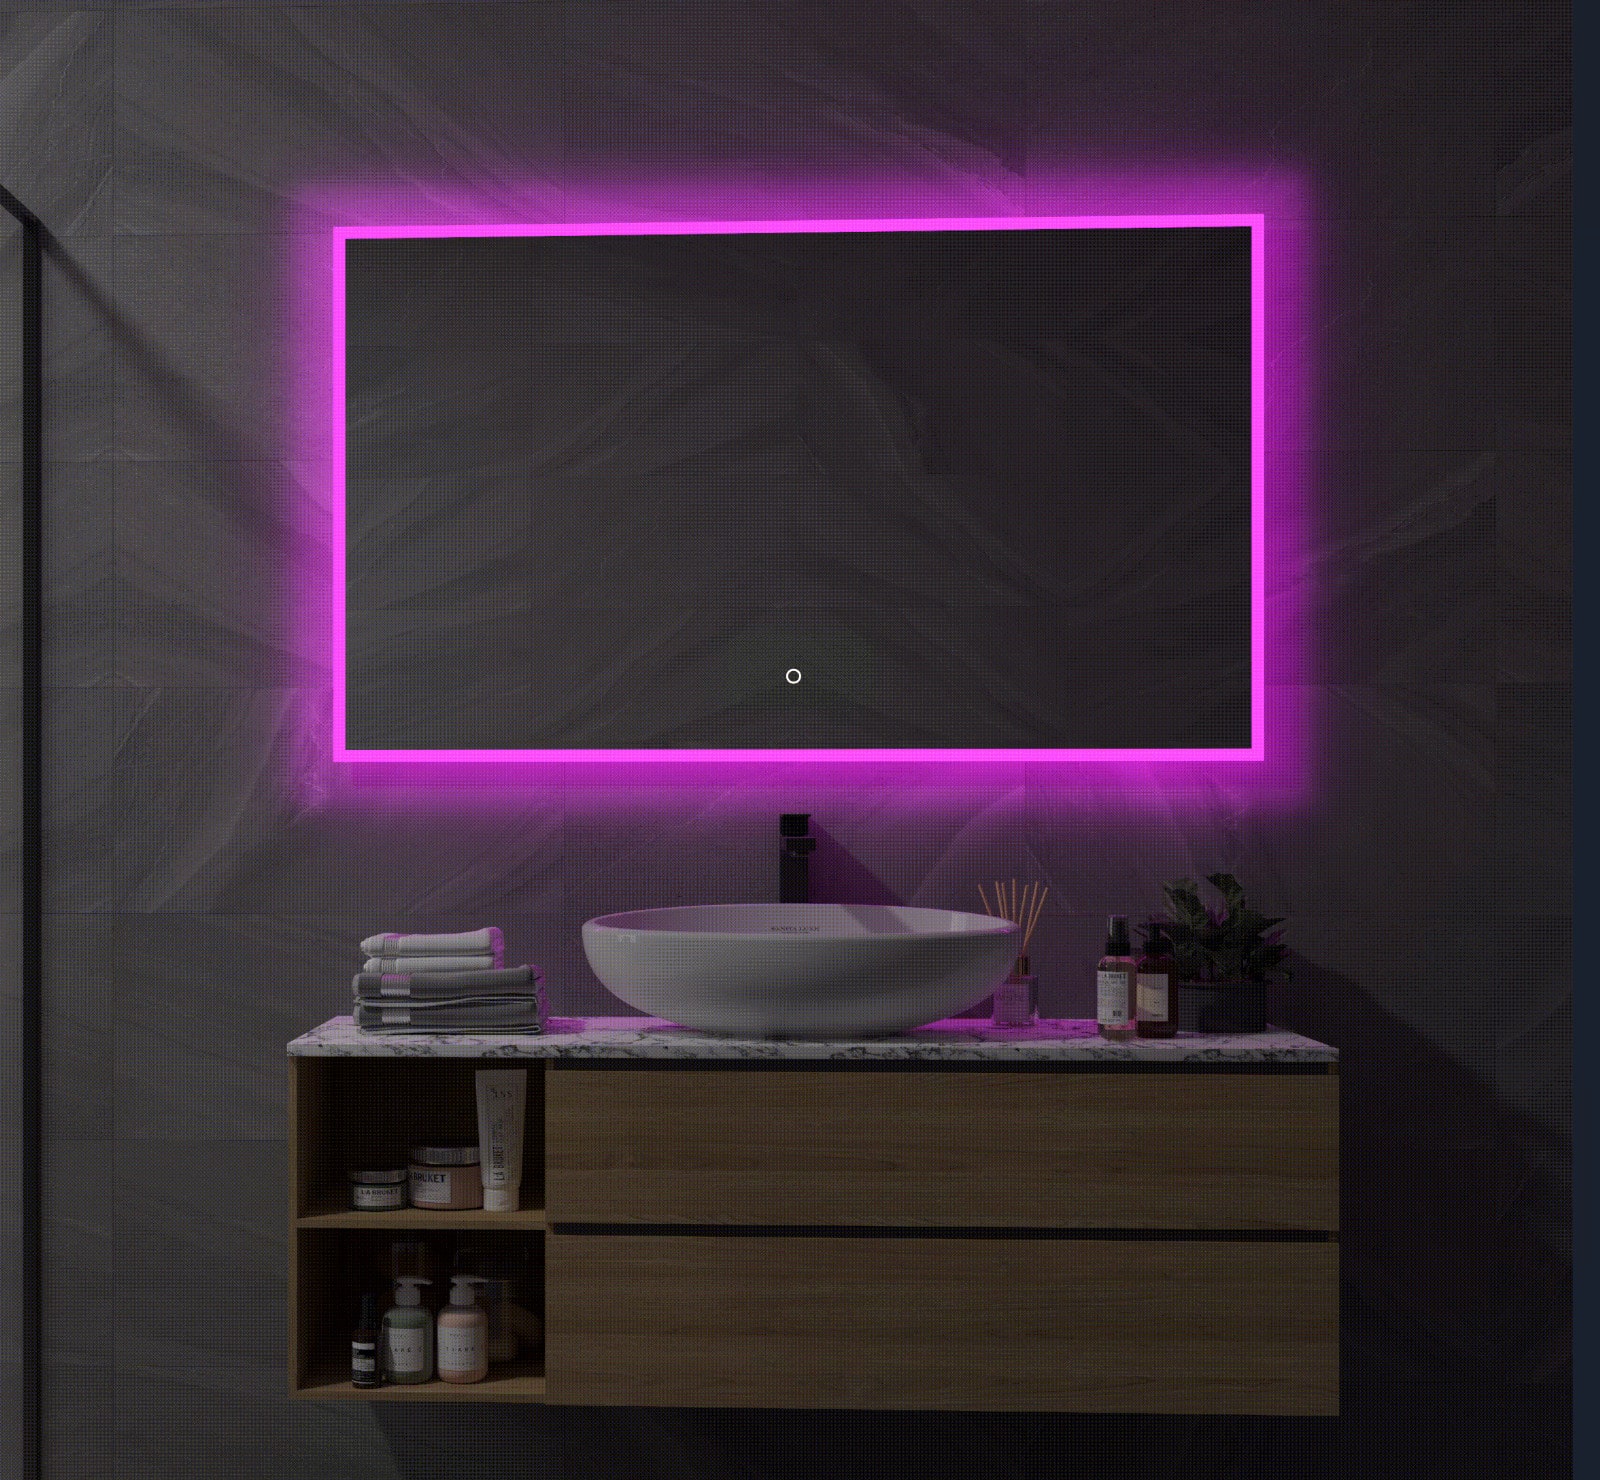 Deze slimme badkamerspiegel is rondom voorzien van RGB verlichting